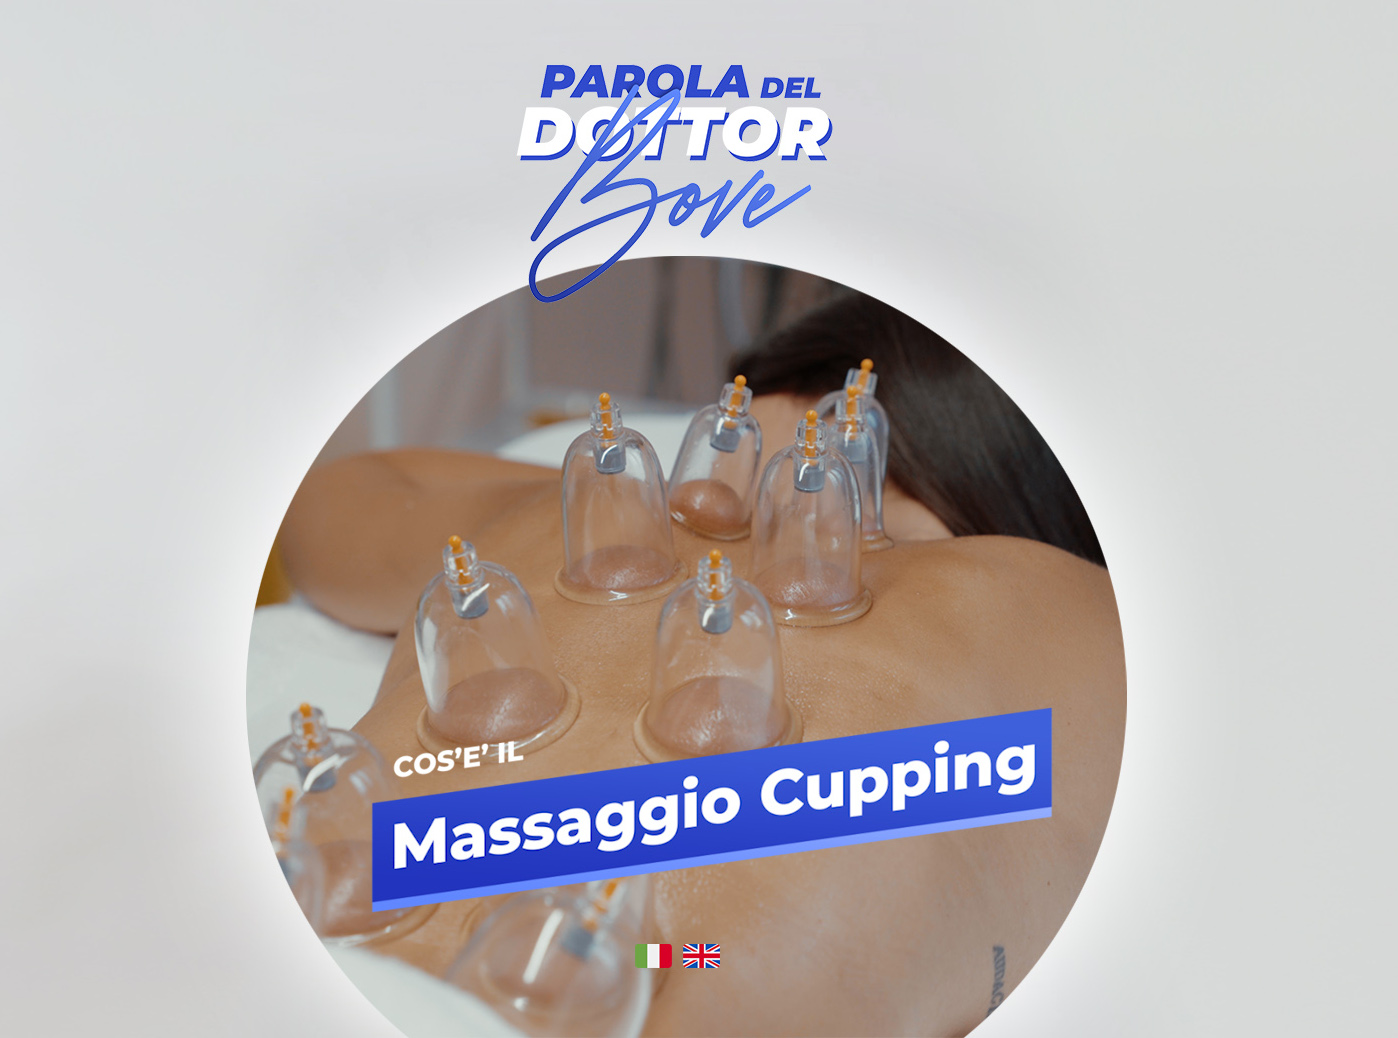 Massaggio Cupping Dott Bove